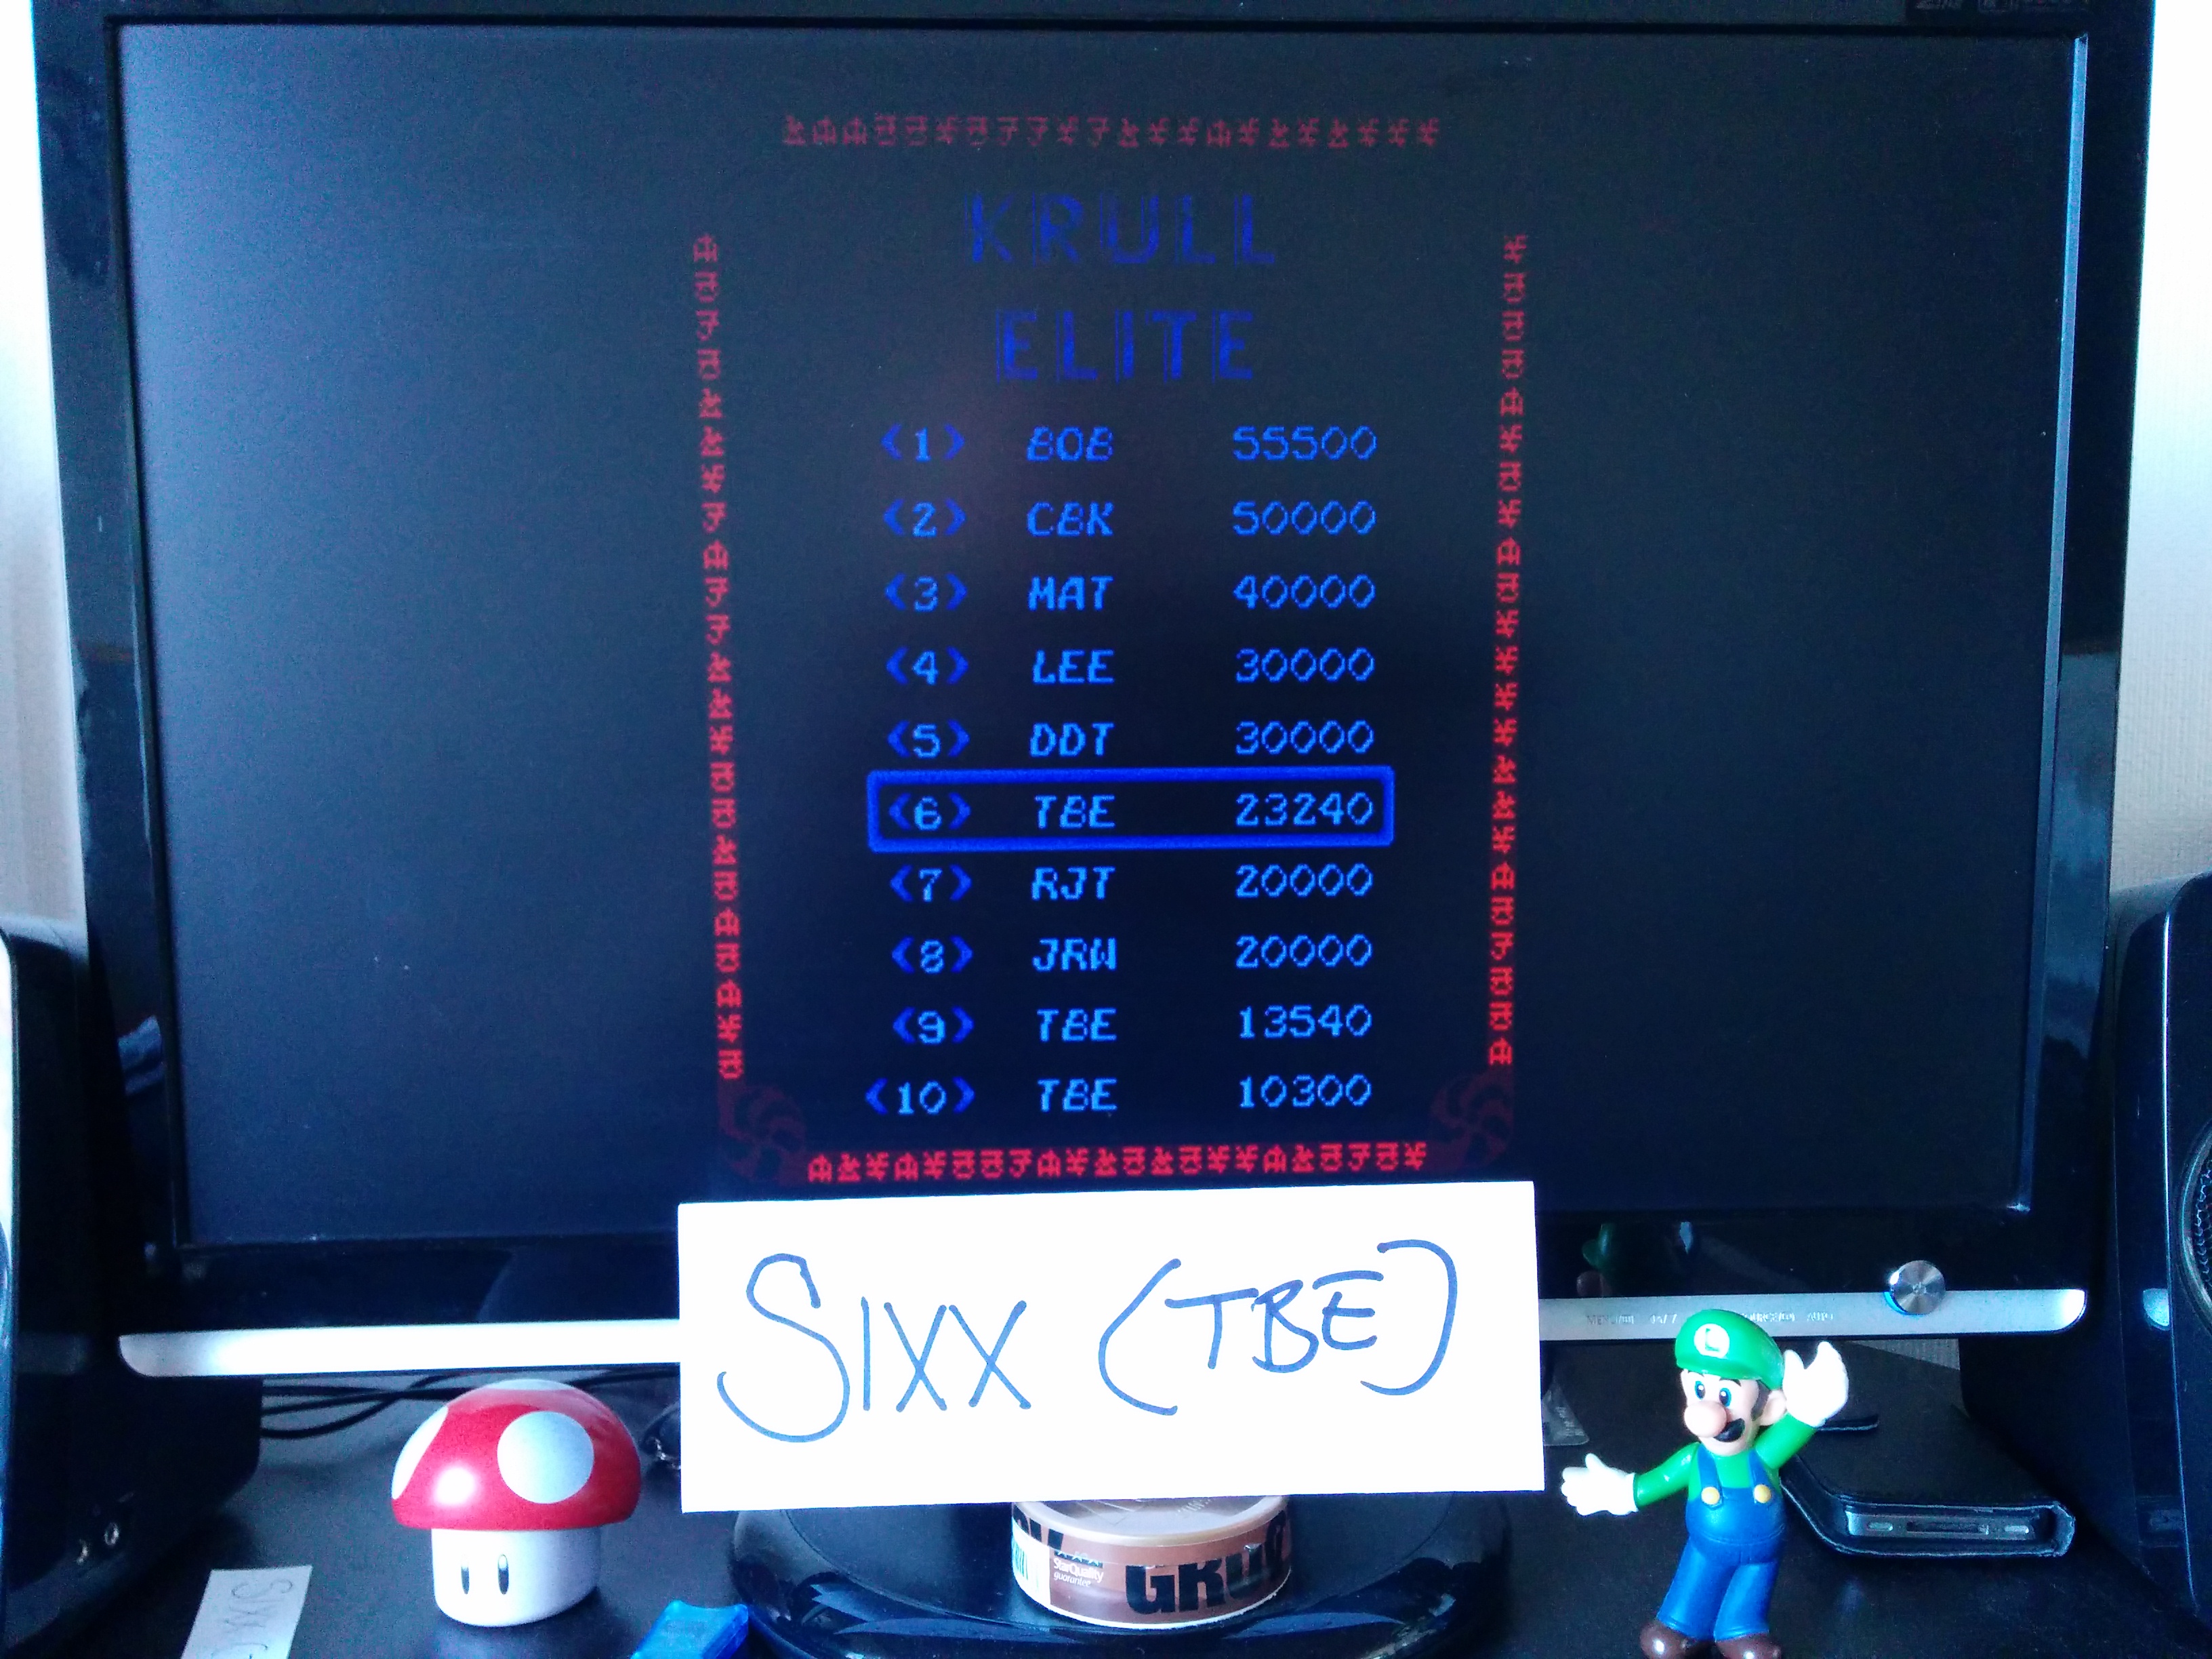 Sixx: Krull (Arcade Emulated / M.A.M.E.) 23,240 points on 2014-04-13 12:18:22